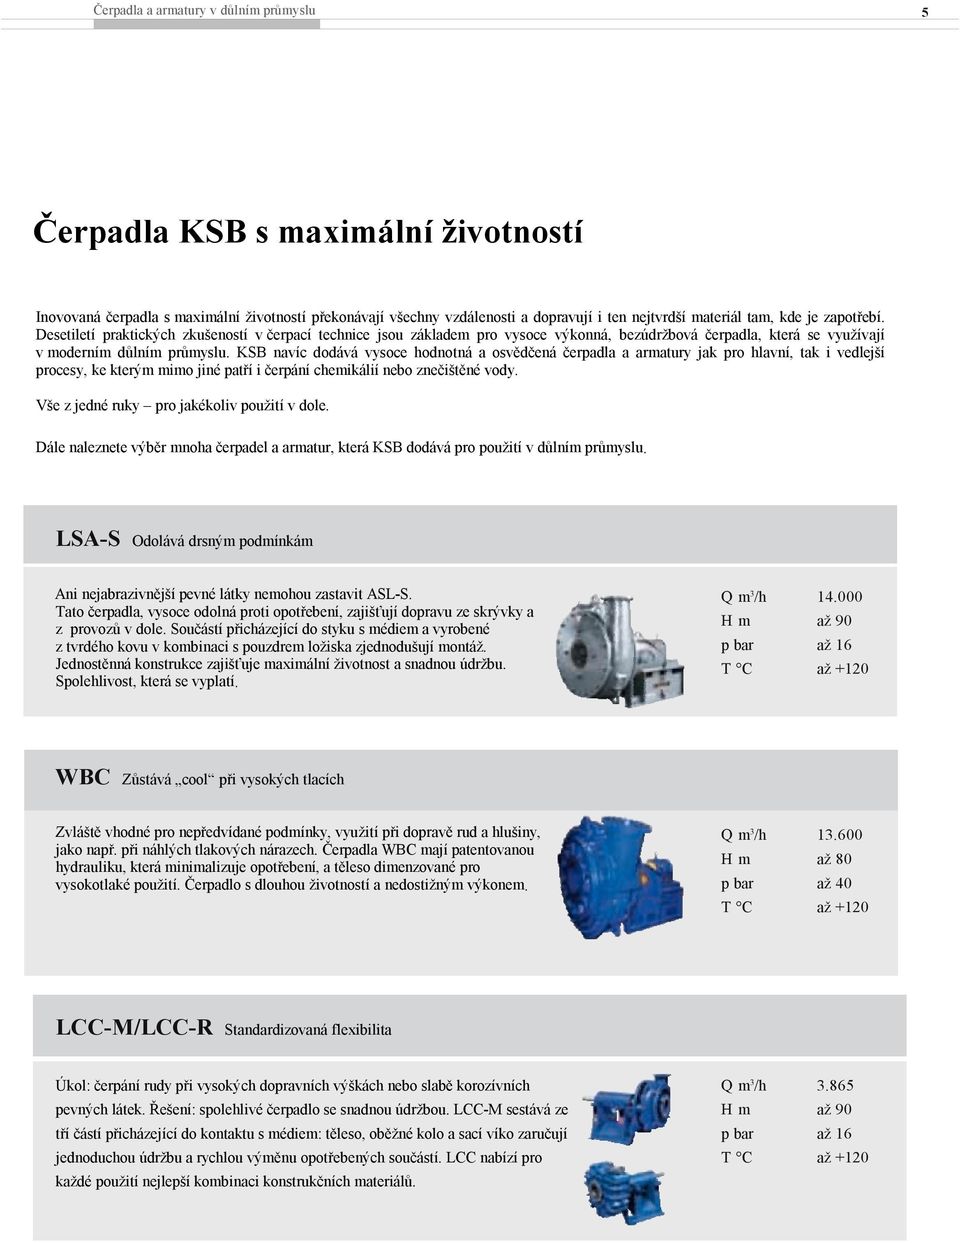 KSB navíc dodává vysoce hodnotná a osvědčená čerpadla a armatury jak pro hlavní, tak i vedlejší procesy, ke kterým mimo jiné patří i čerpání chemikálií nebo znečištěné vody.